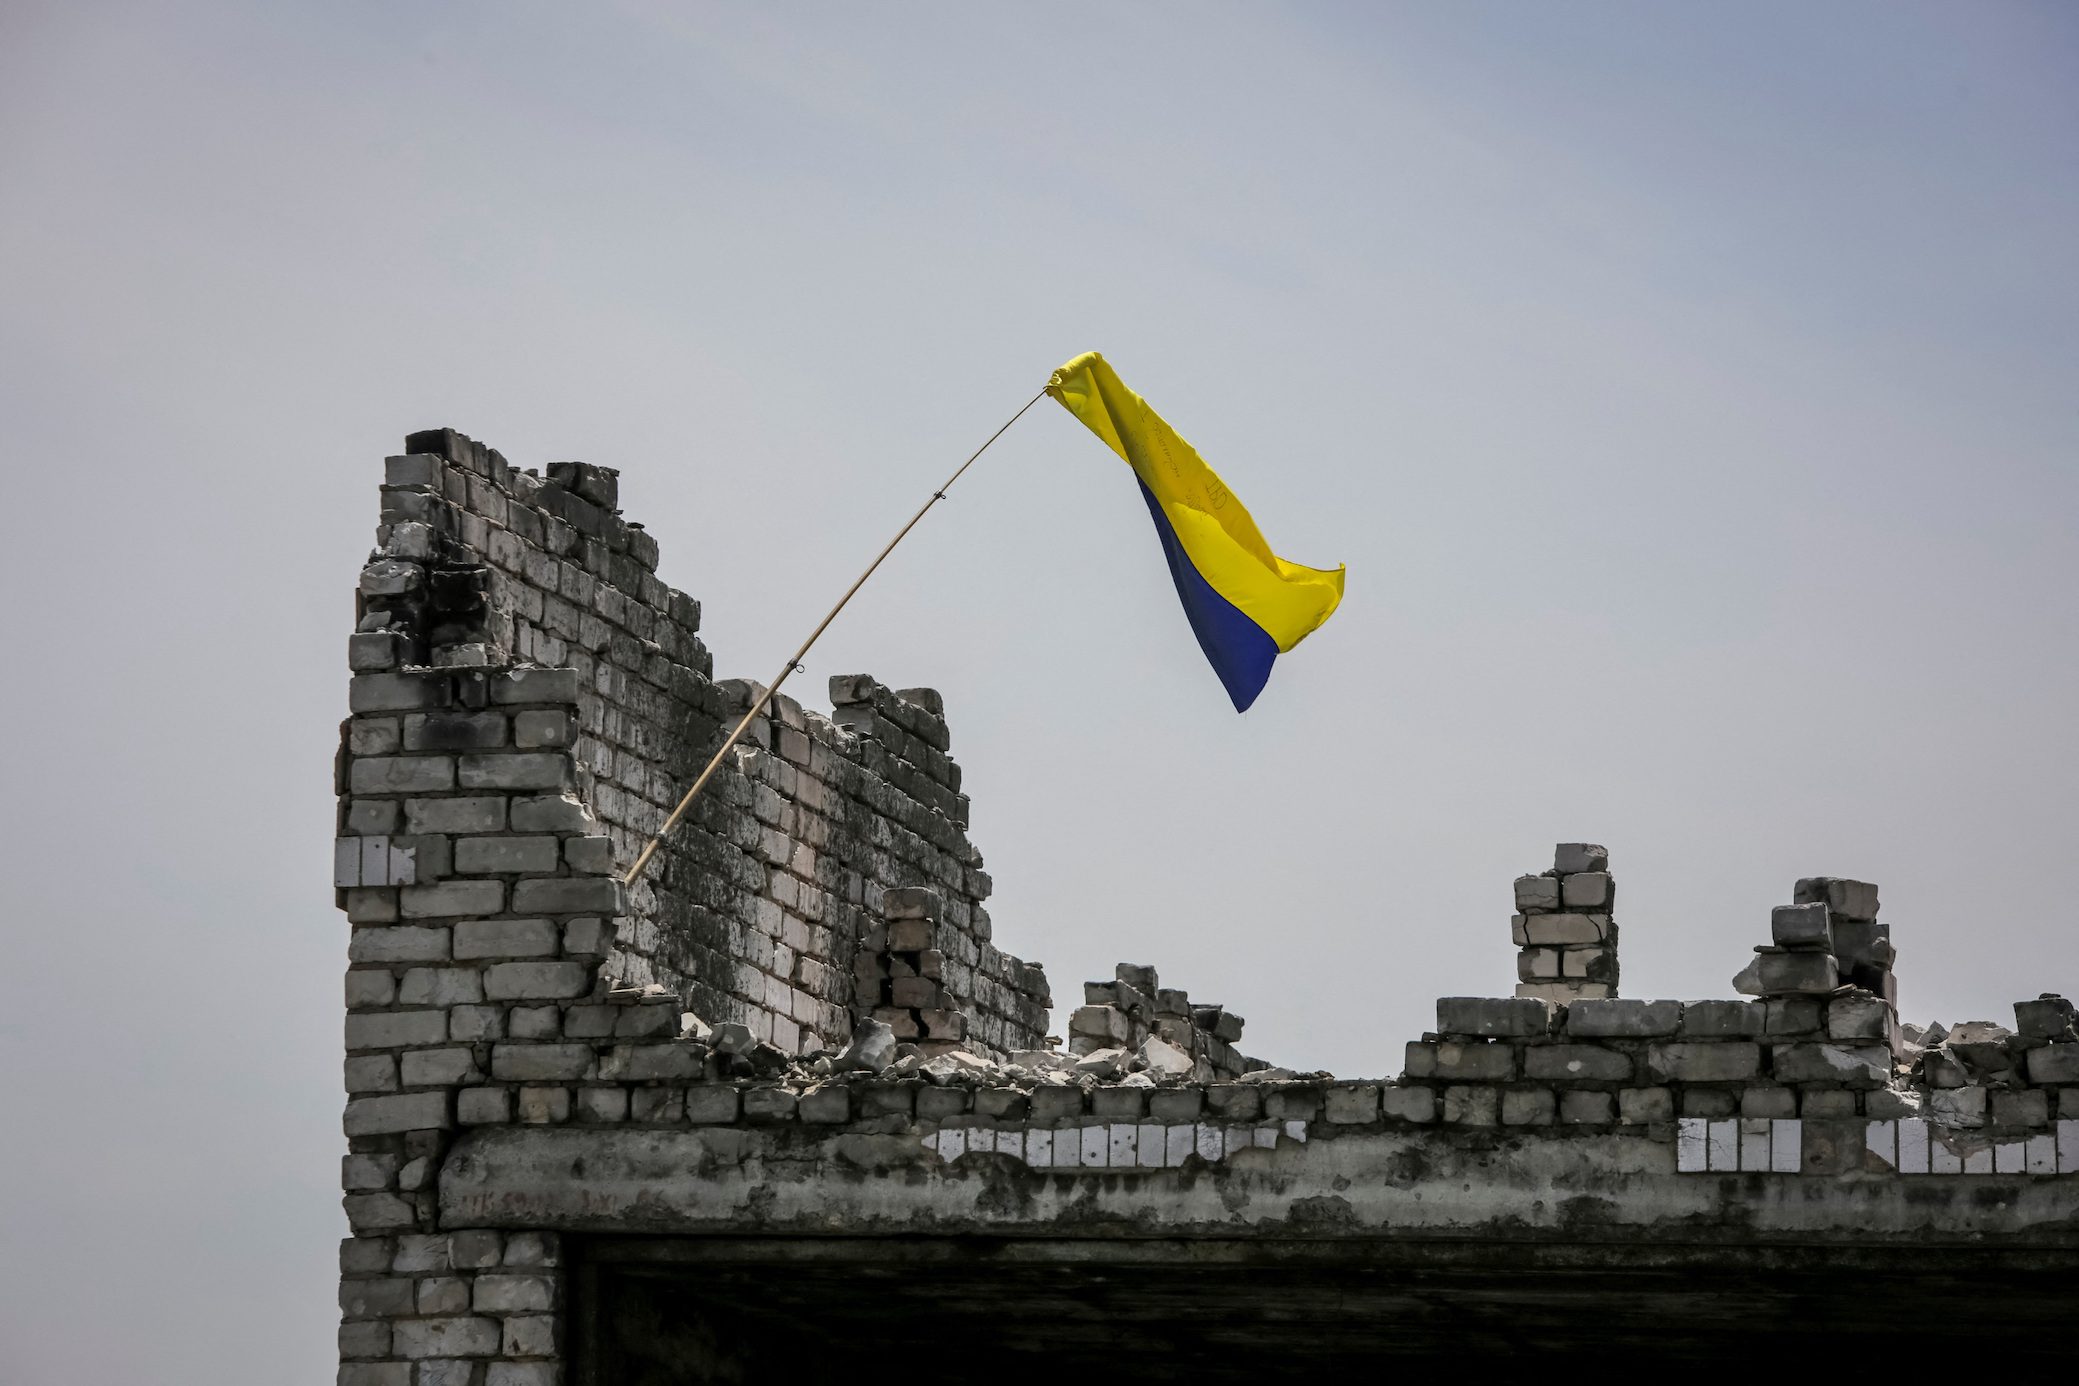 Ukraine bondholders poised to form creditor group for $20-billion debt talks, sources say